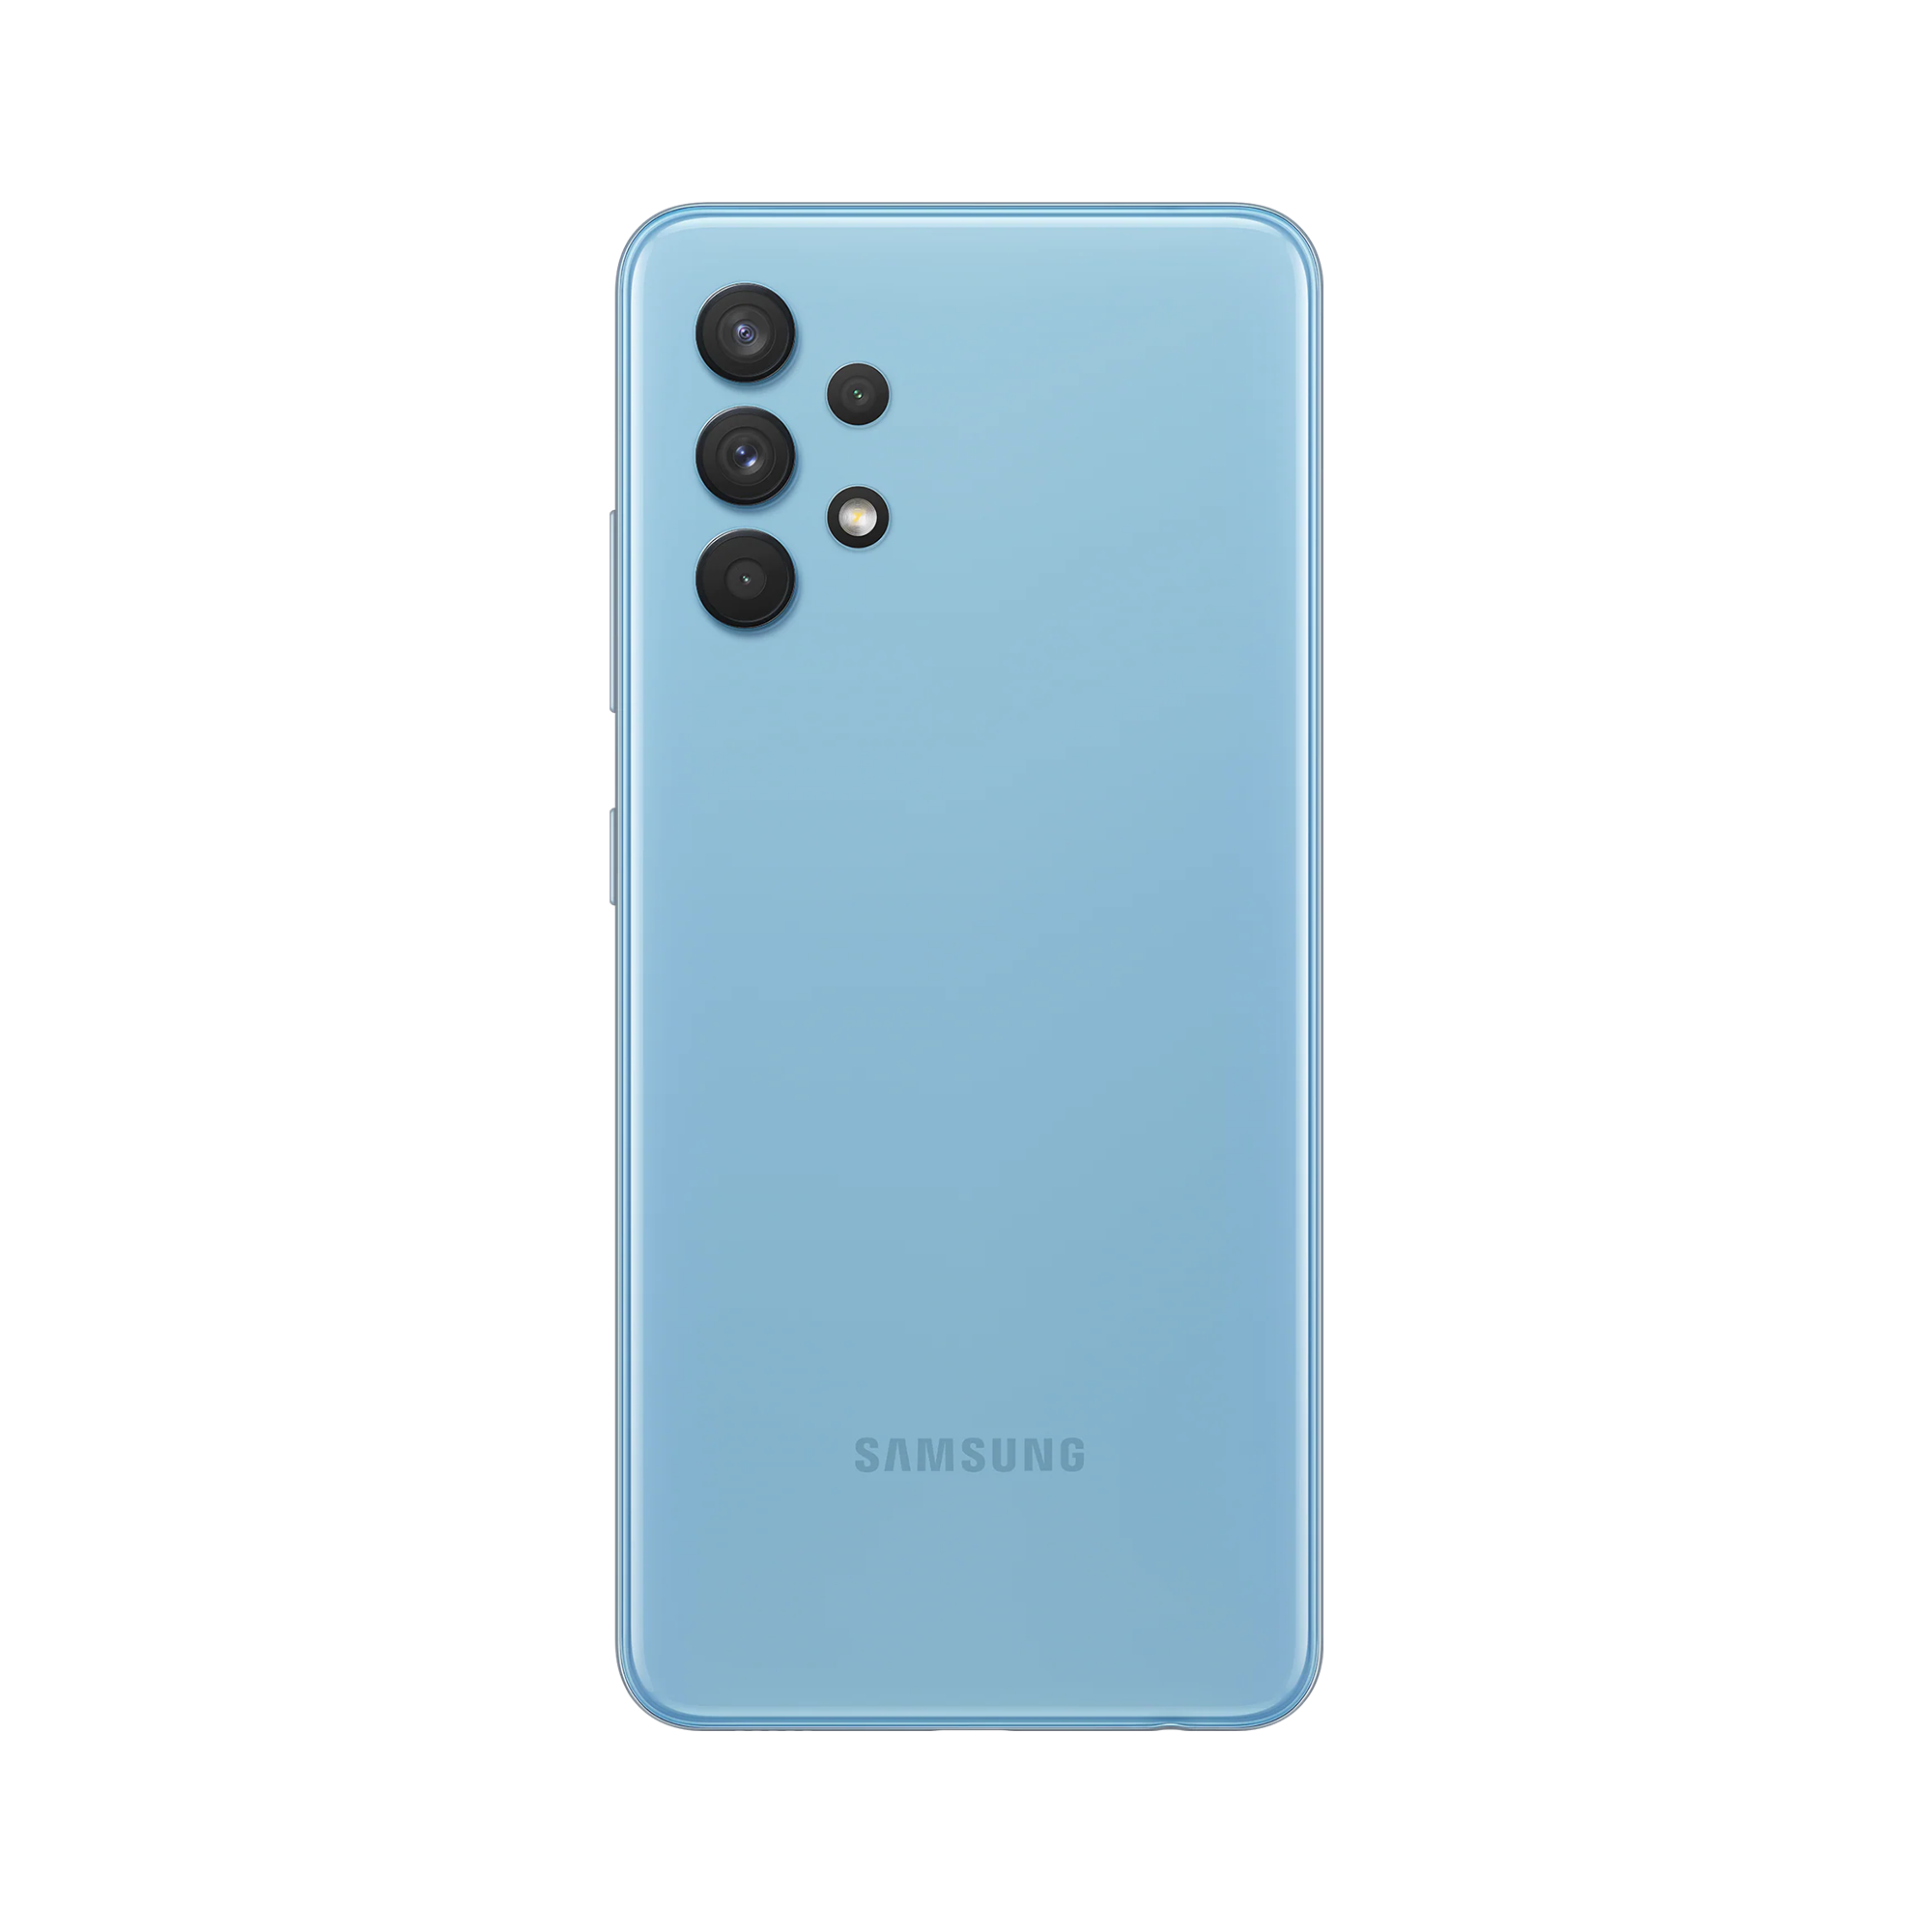 Samsung Galaxy A32 Awesome Blue Back